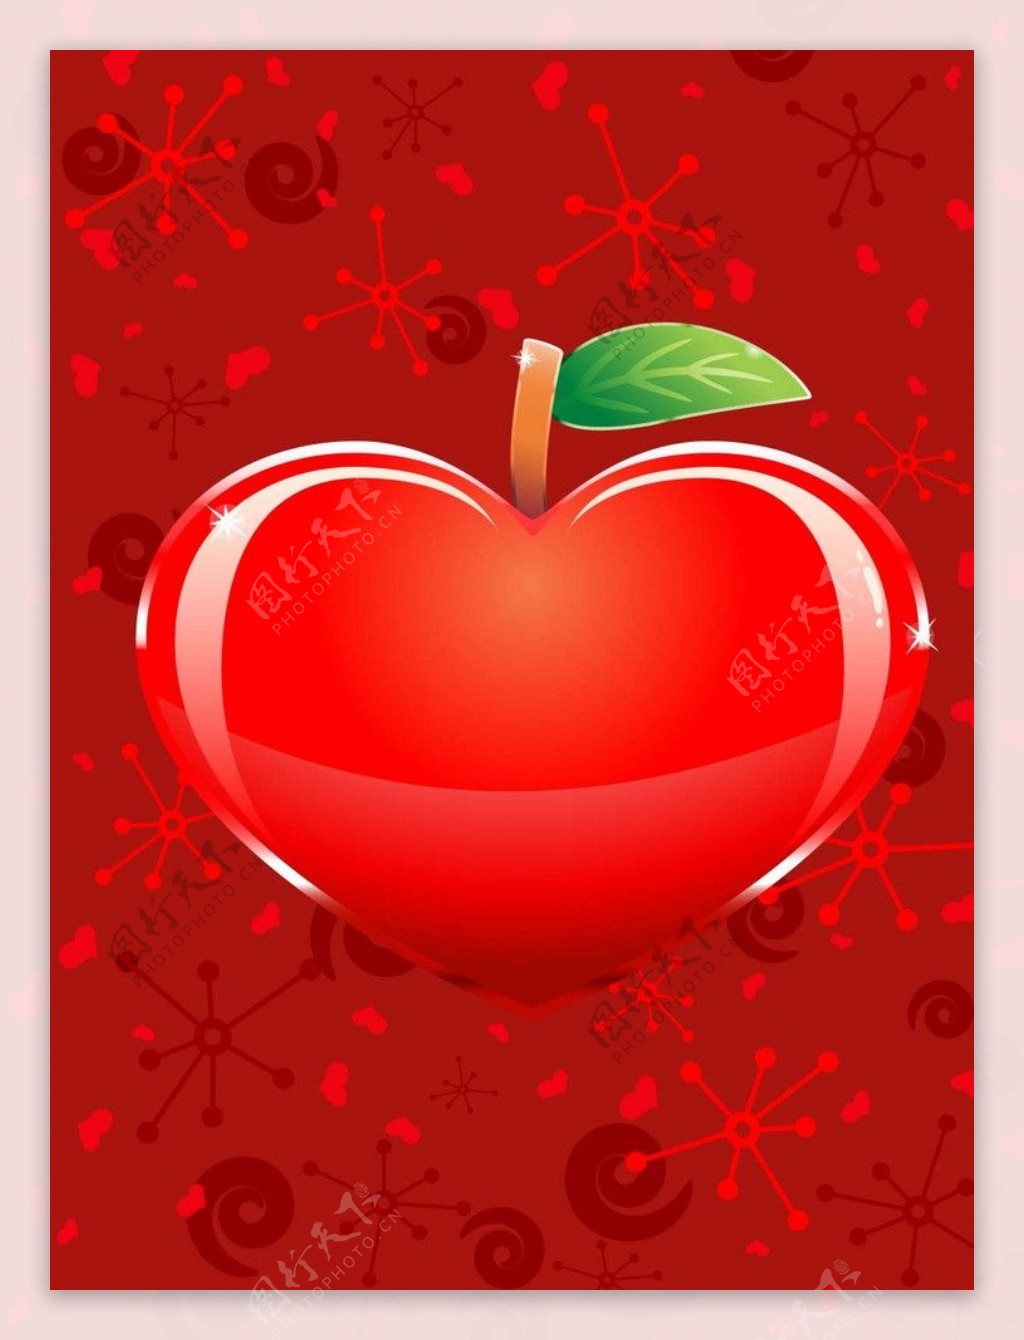 花形泡沫中的红心 多汁的花园，芦荟的叶子，心象征爱 库存图片. 图片 包括有 符号, 粉红色, 图标, 红色 - 180220967